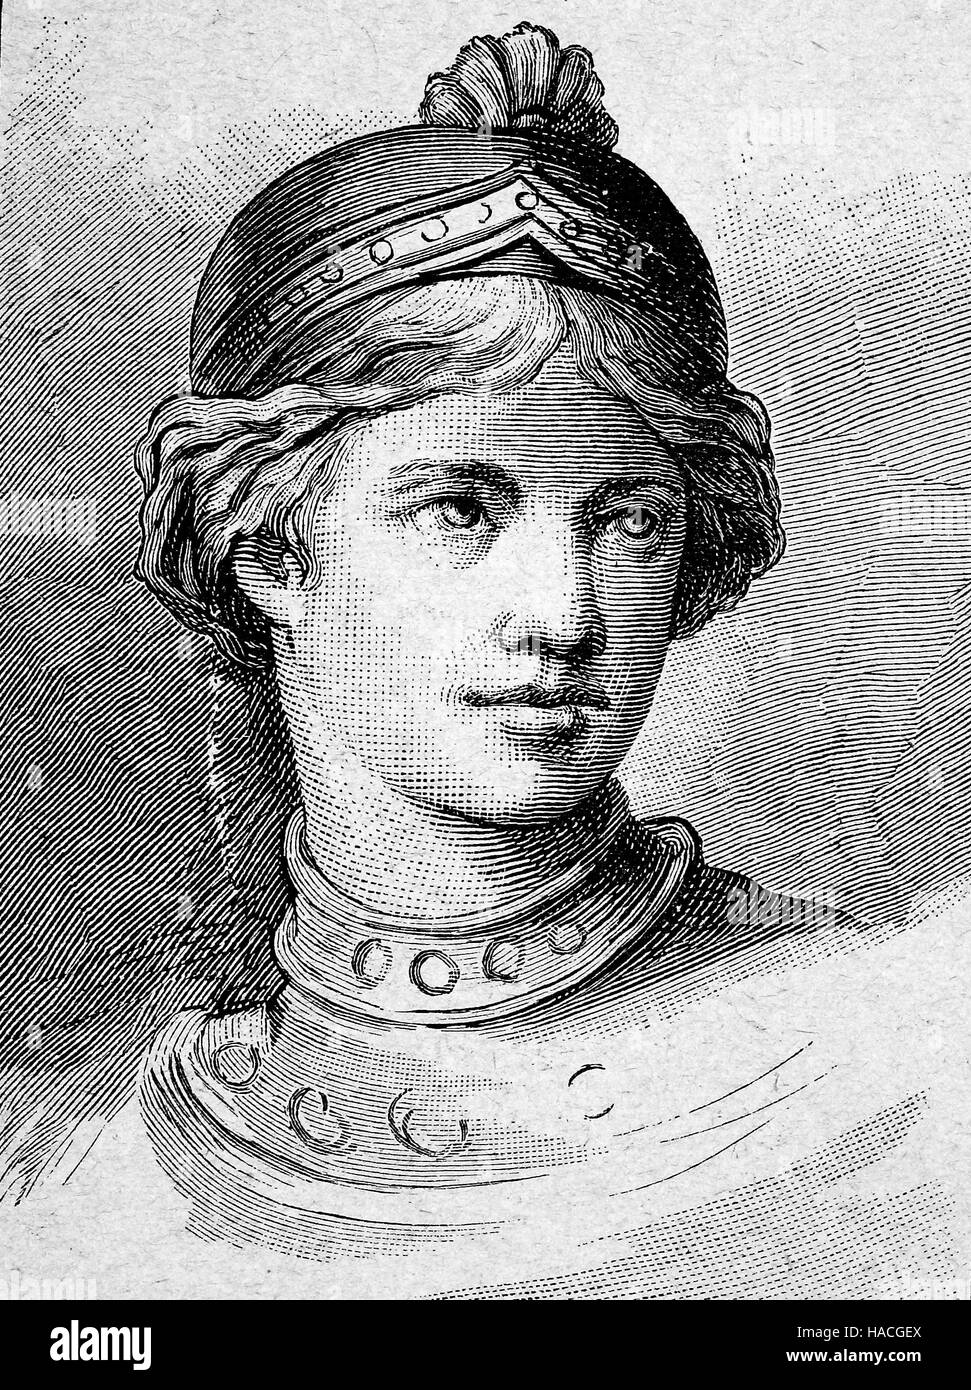 Hair style byzantin avec capot, illustration historique, gravure sur bois Banque D'Images